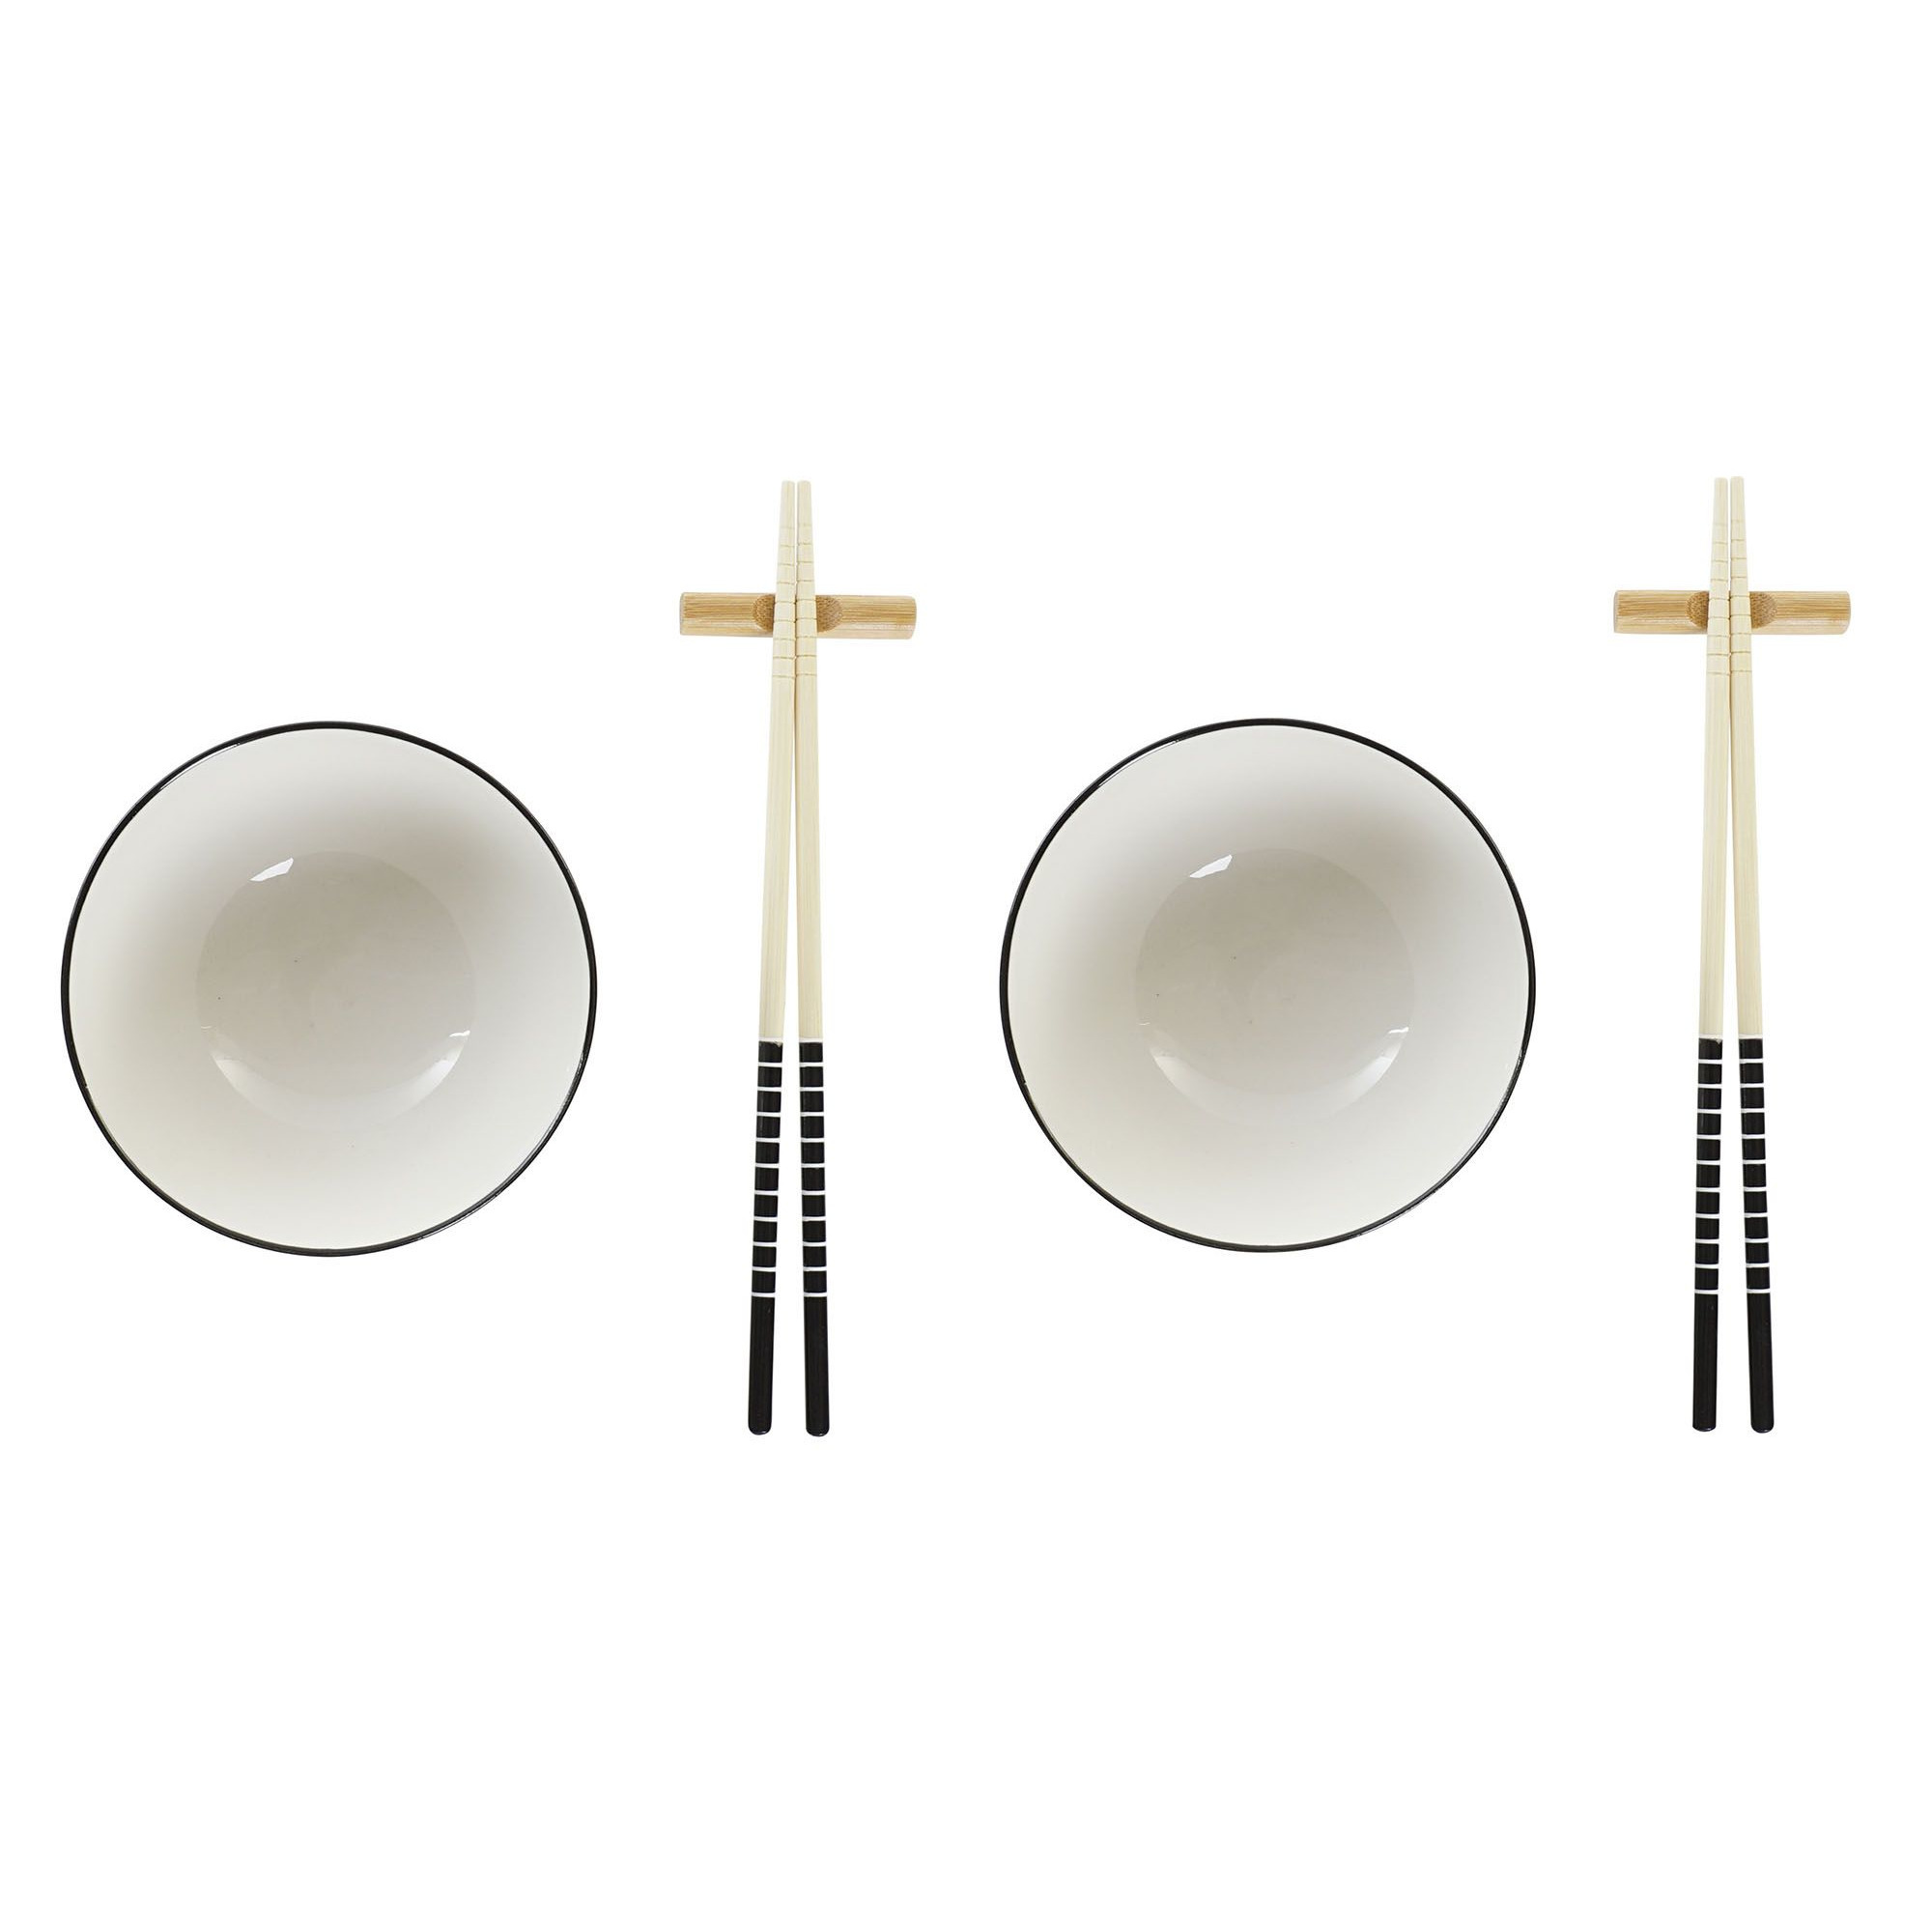 Items 6-delige sushi serveer set aardewerk voor 2 personen wit -